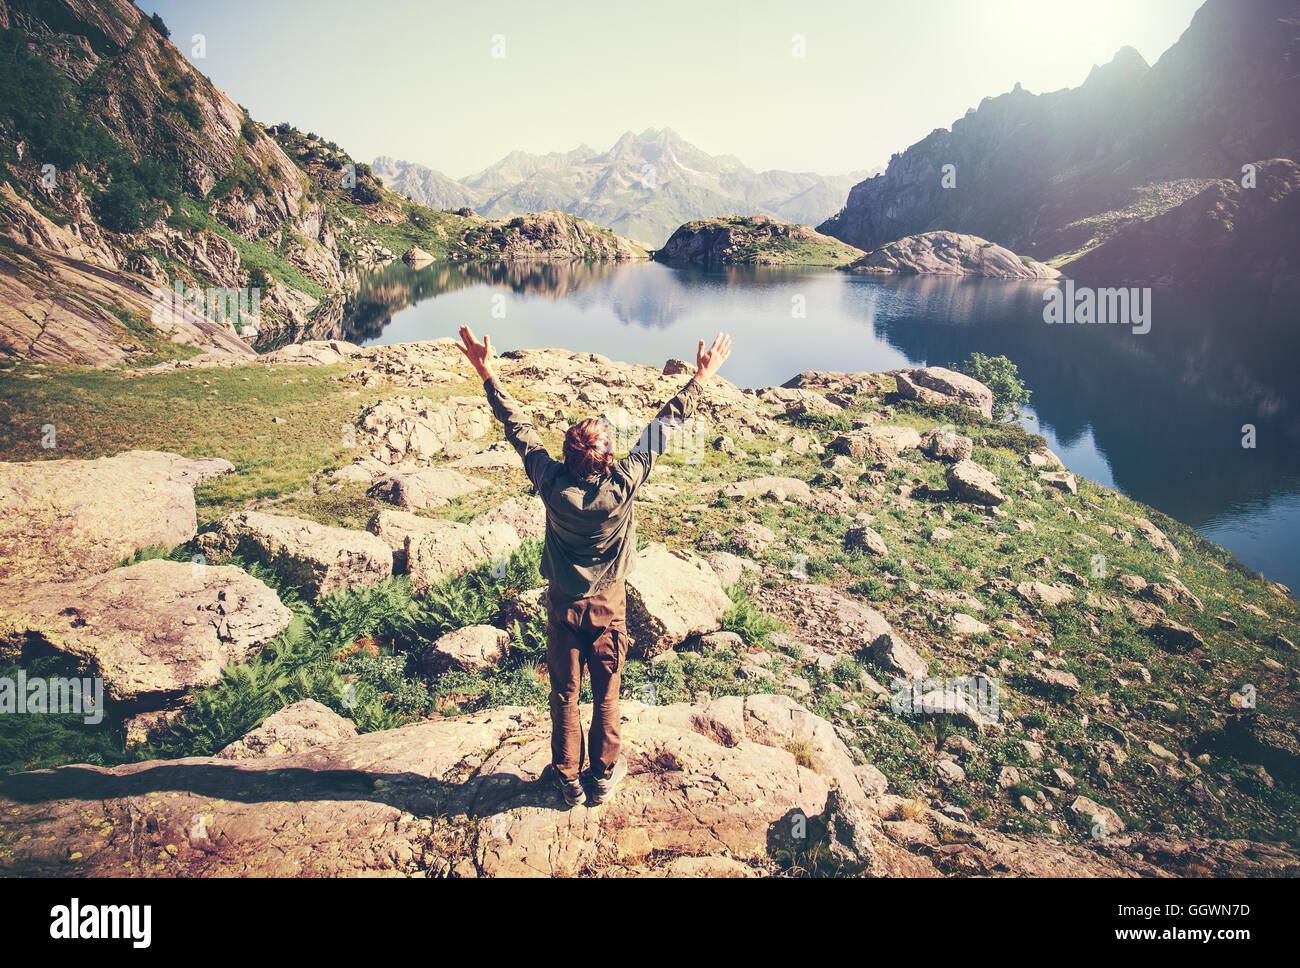 Mann Traveler Yoga entspannen allein Hände hob gesunden Lifestyle Konzept See und die Berge ruhig Reiselandschaft auf Hintergrund Stockfoto